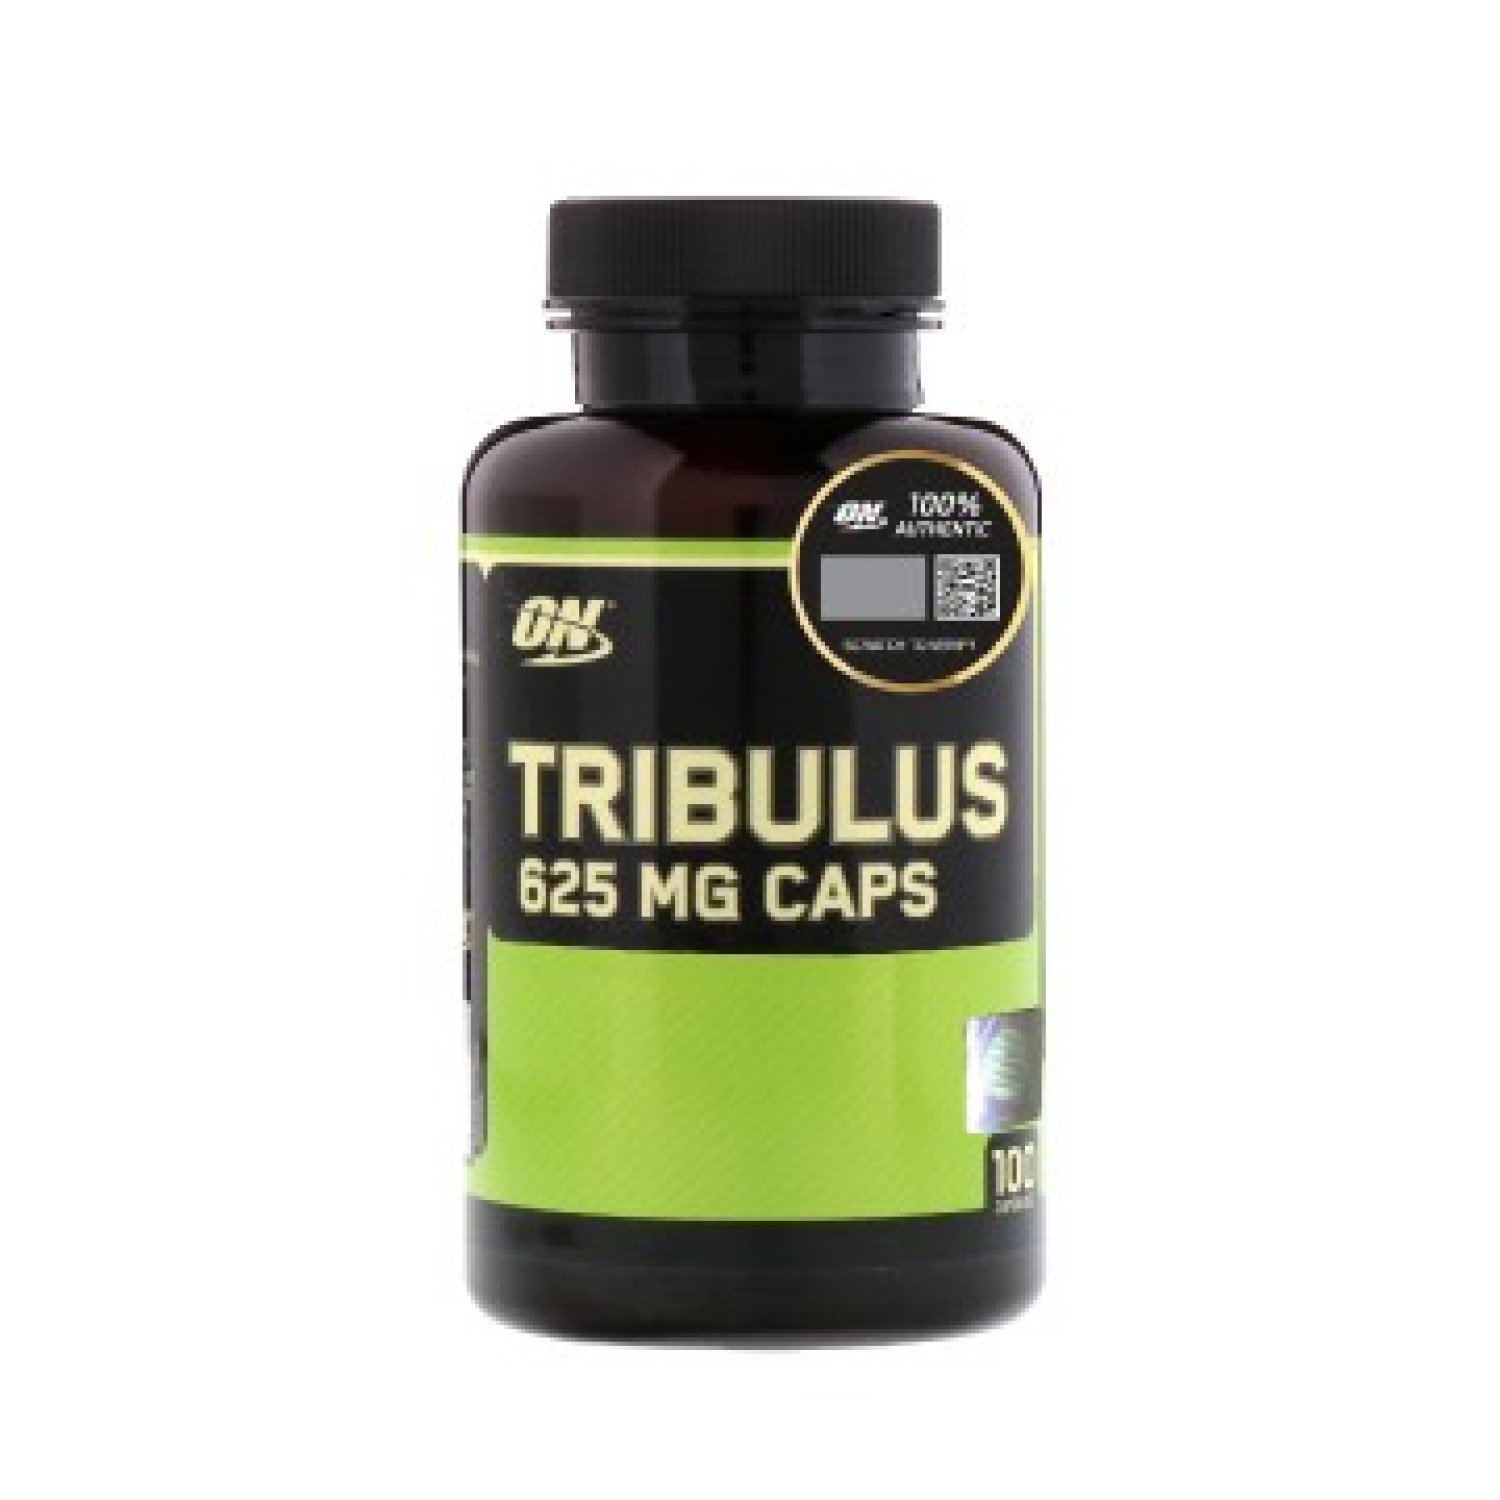 on-tribulus-625-mg-caps-6555875994f4e.jpeg